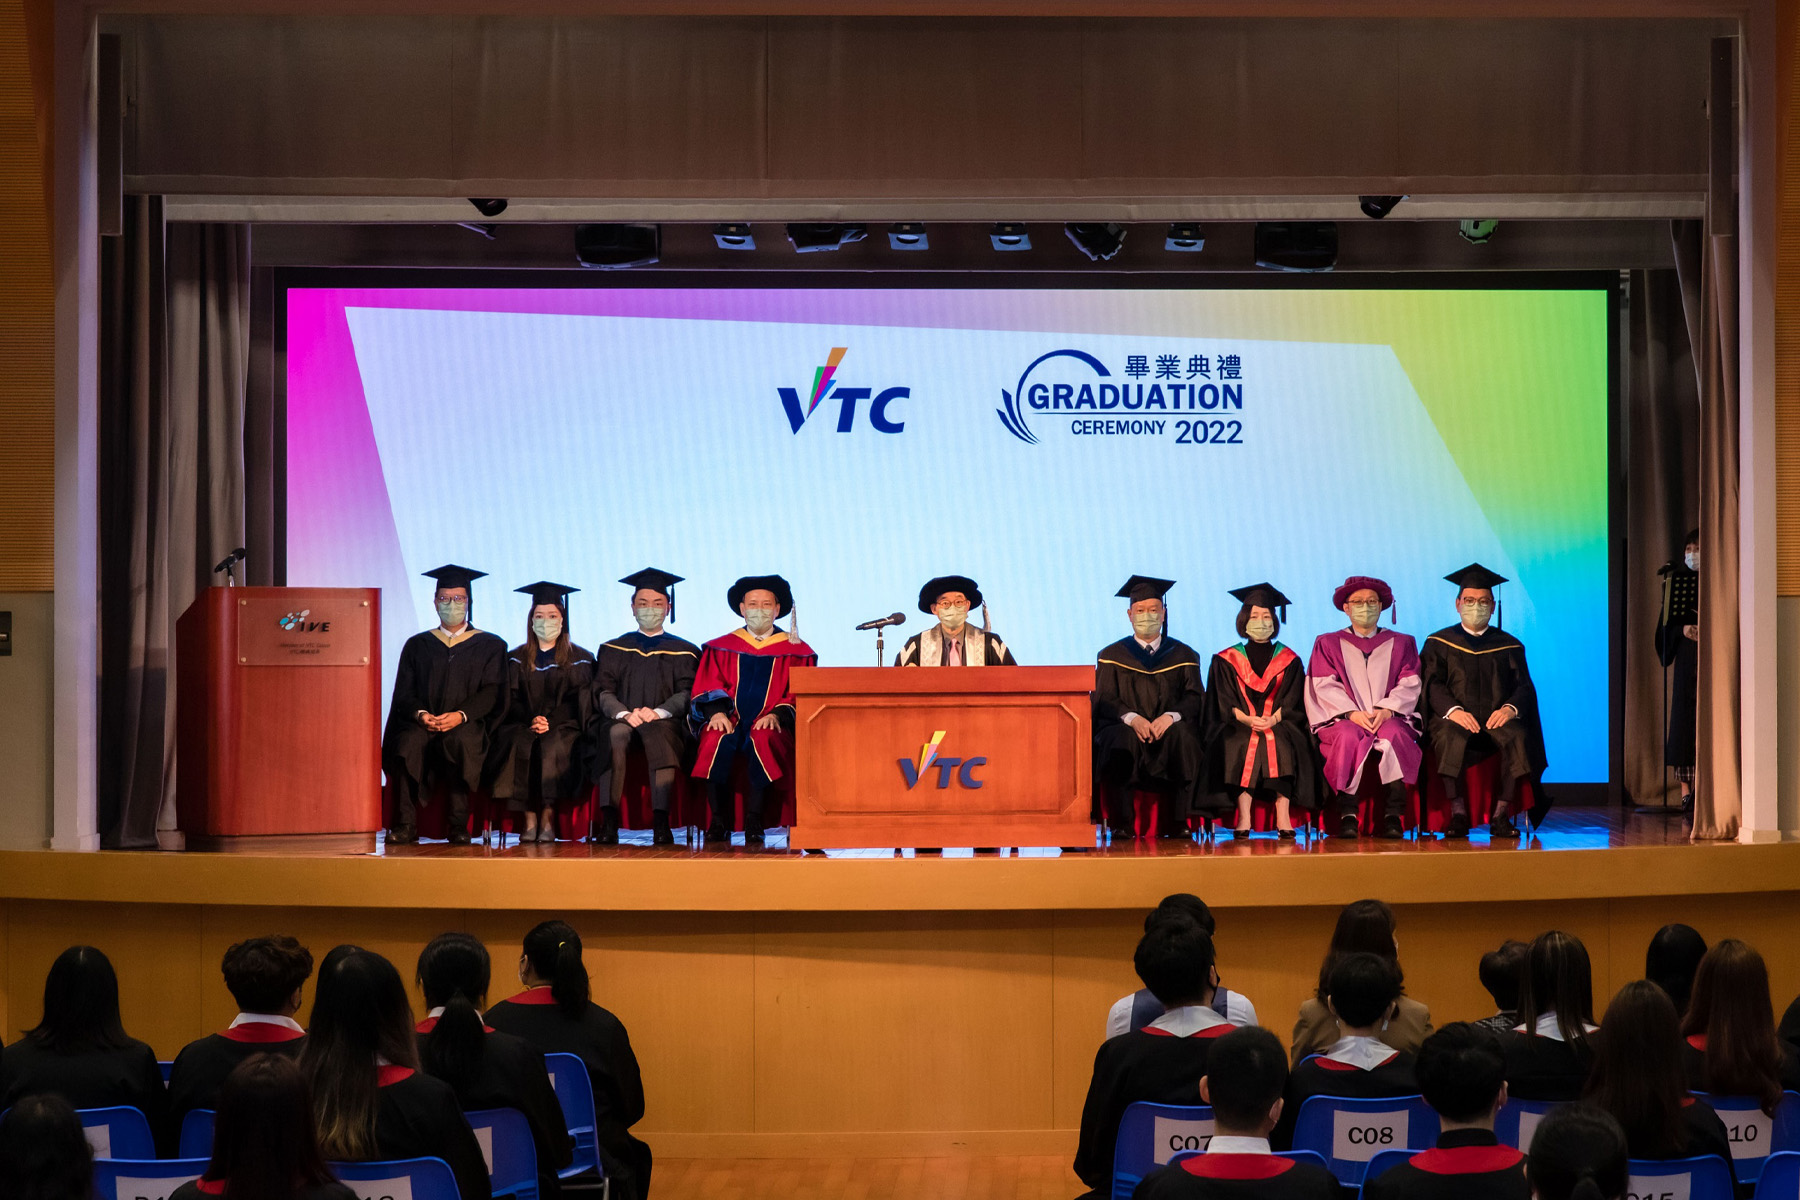 今年逾1万6千名来自VTC多间院校成员的毕业生，会於毕业典礼获颁授学士学位丶高级文凭丶基础课程文凭丶职专文凭丶文凭和证书等各级学历